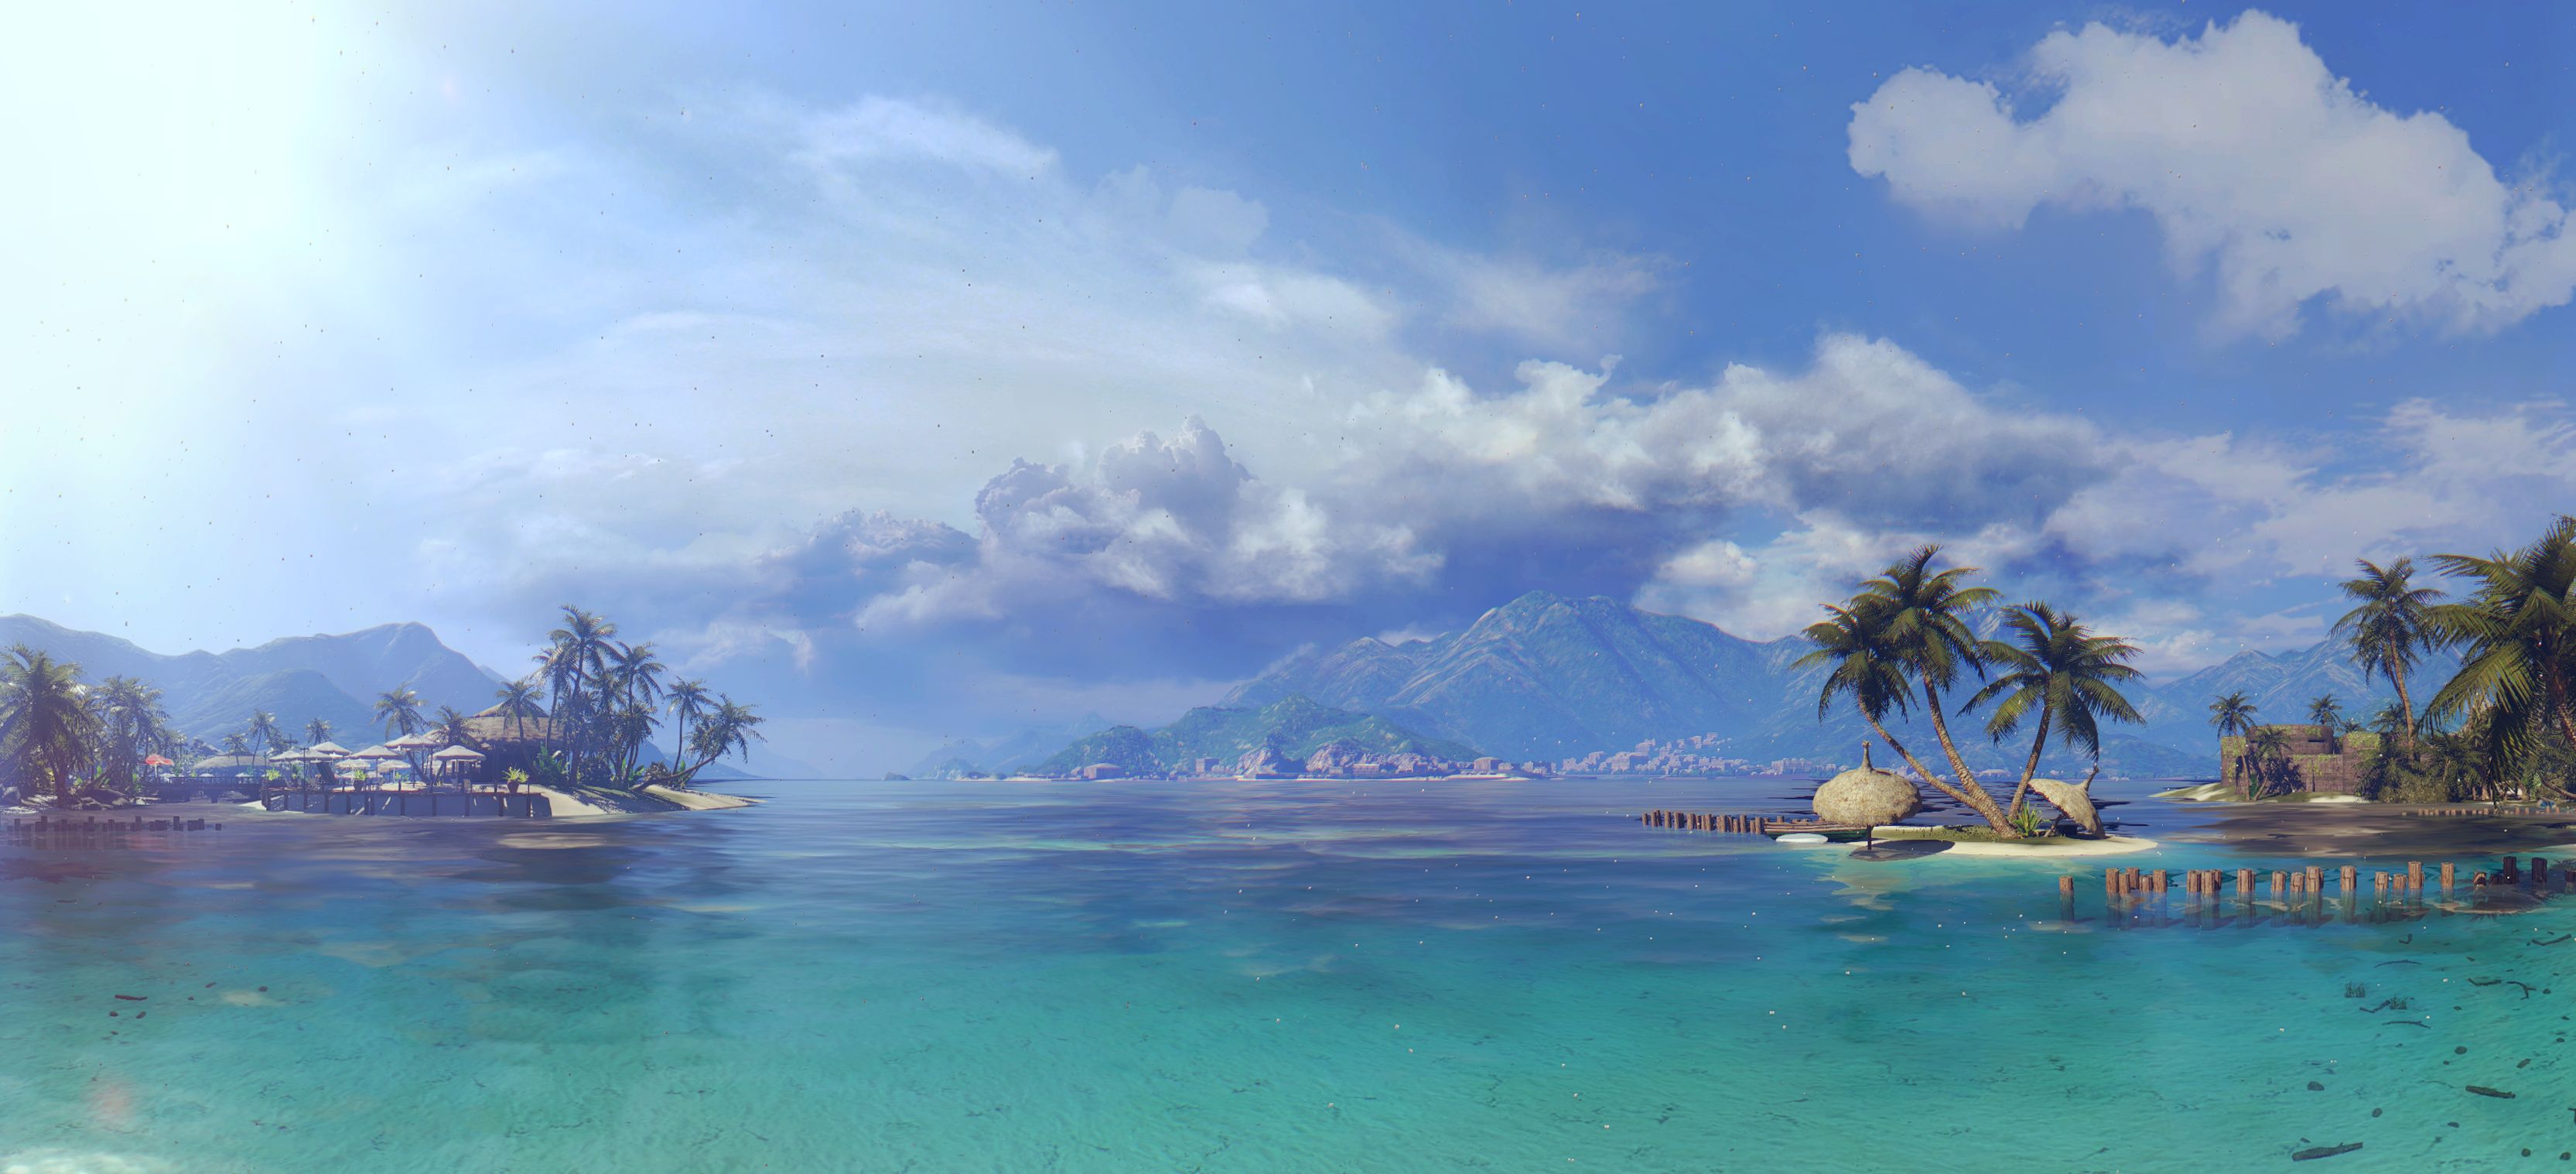 無料モバイル壁紙テレビゲーム, 死んだ島をダウンロードします。